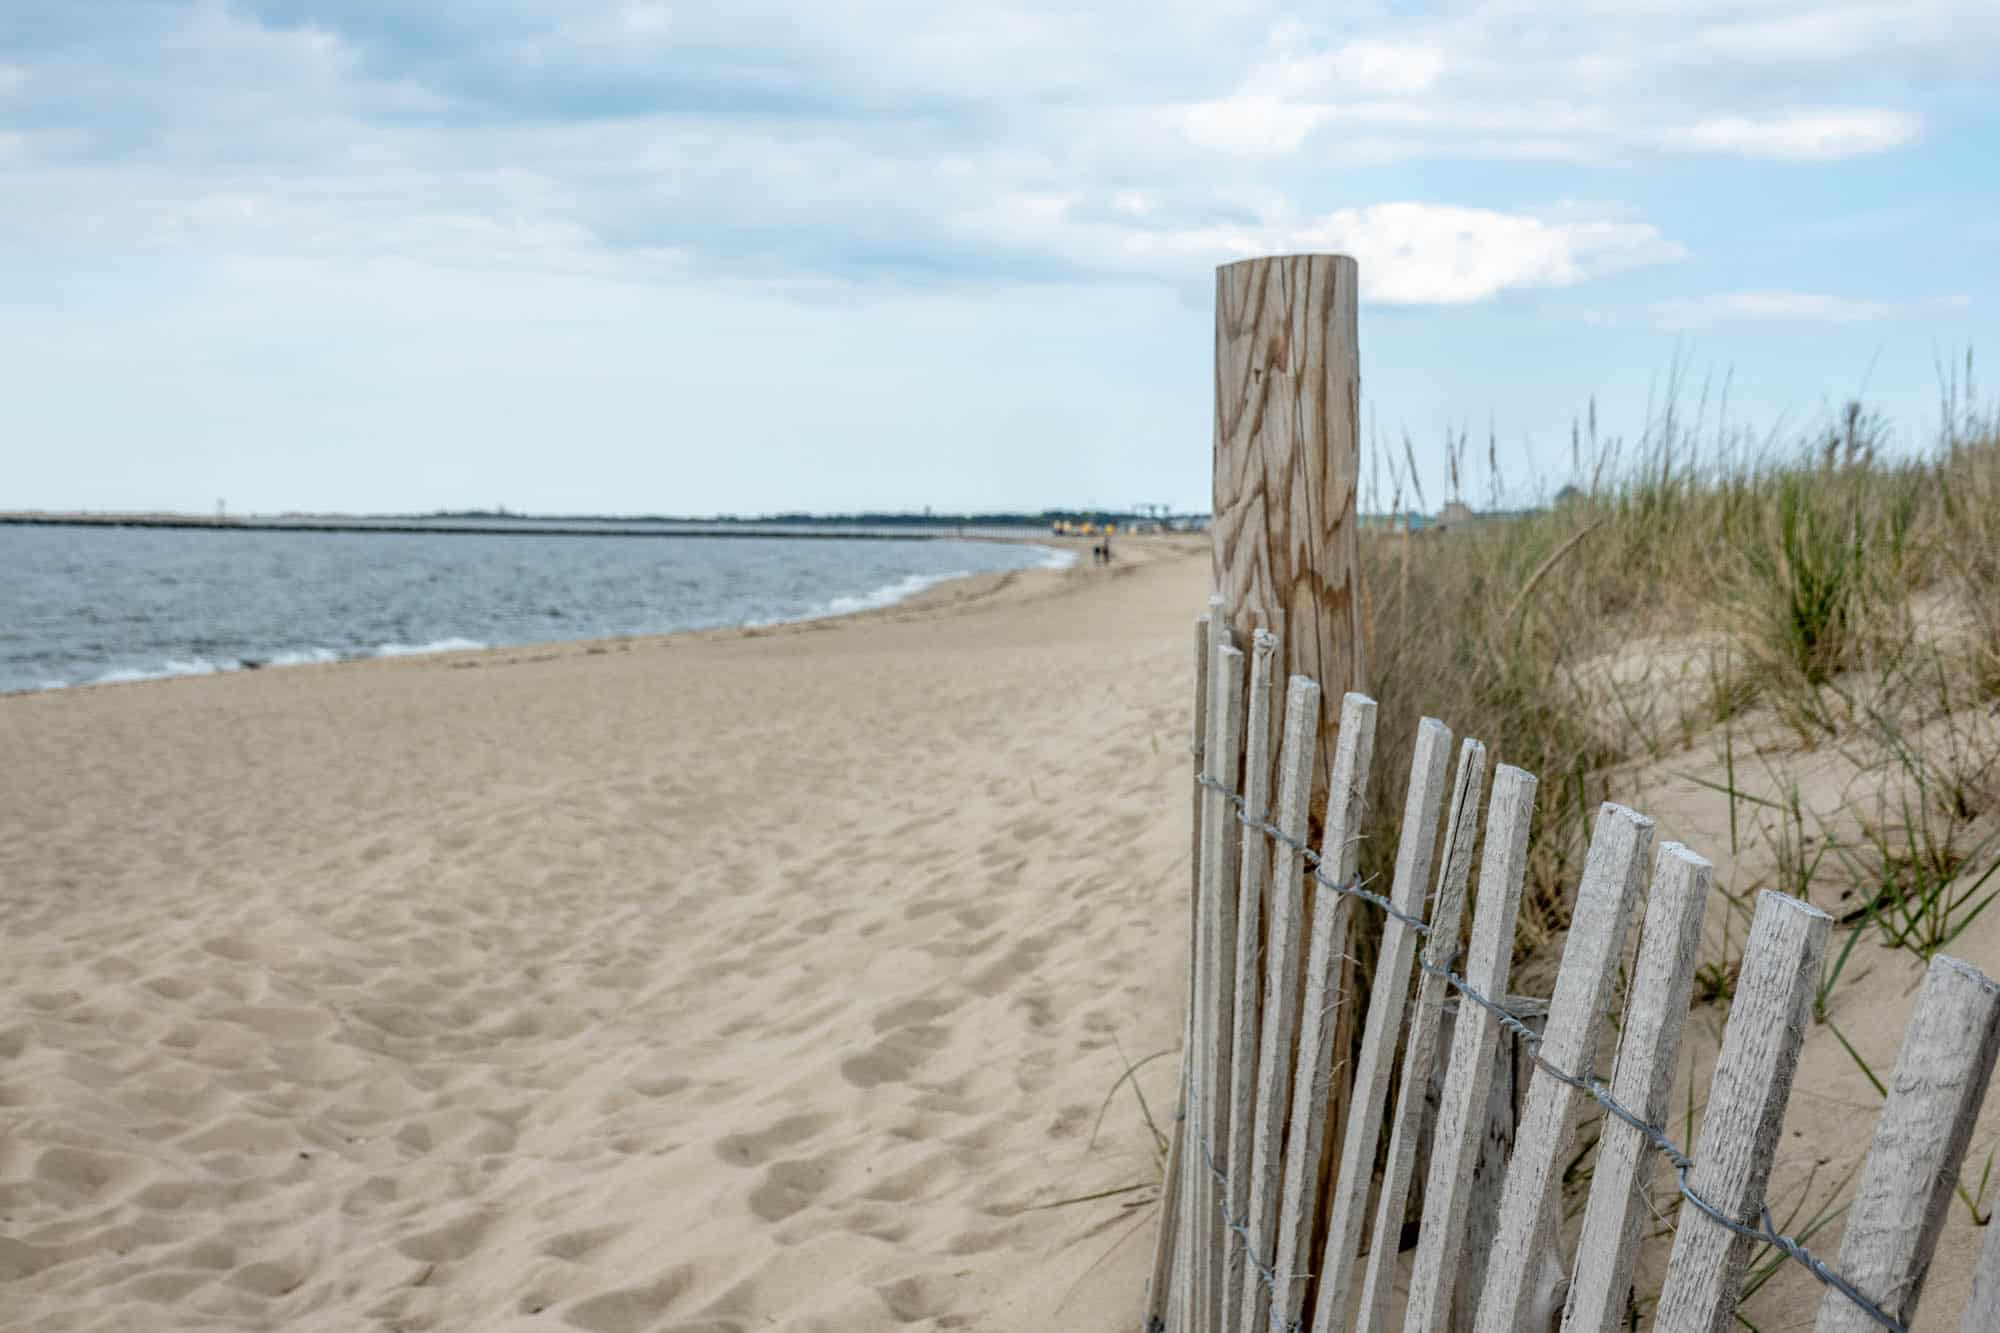 Wooden fence running along a sand dune on a beach